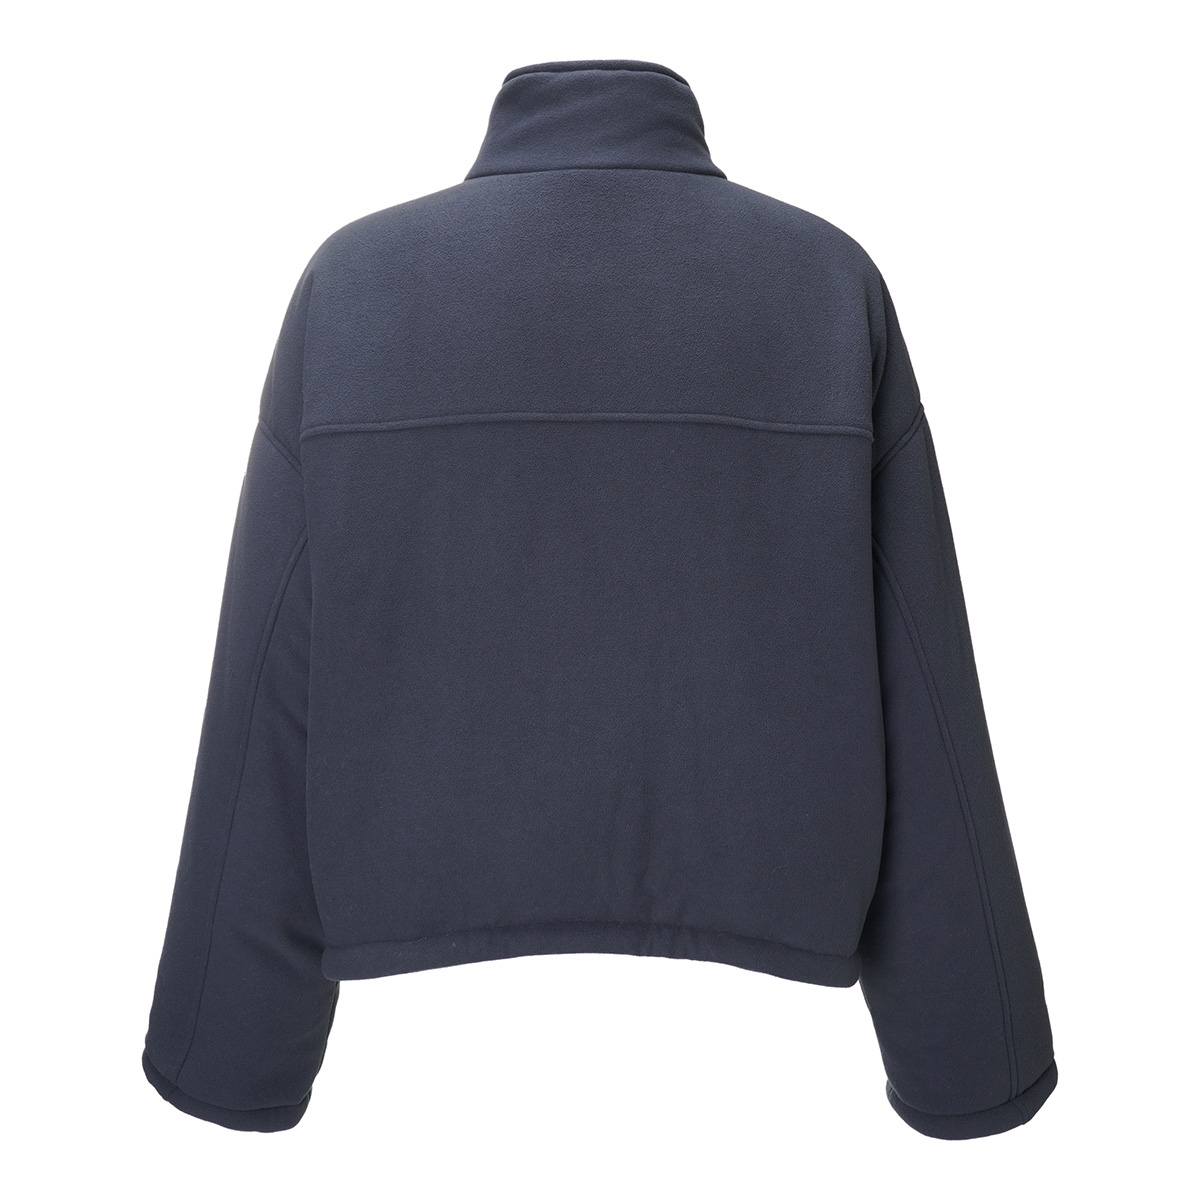  Balenciaga BALENCIAGA with cotton jacket REVERSIBLE PUFFER gray men's 704507-tmq04-1055